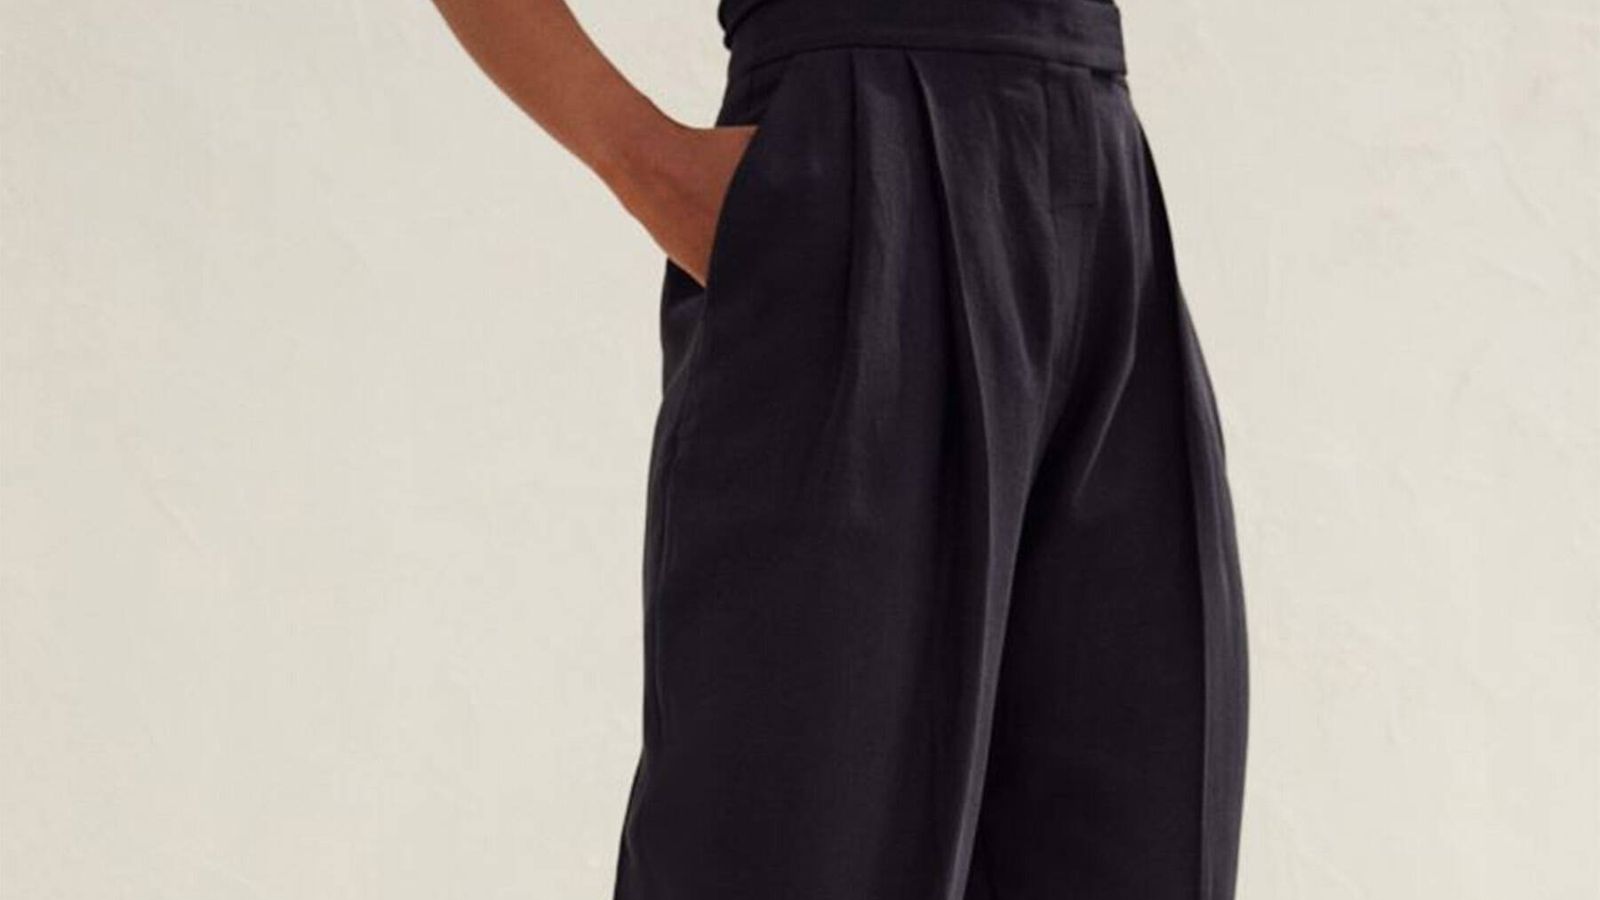 Elegante, cómodo y trendy: H&M reinventa el pantalón sastre clásico